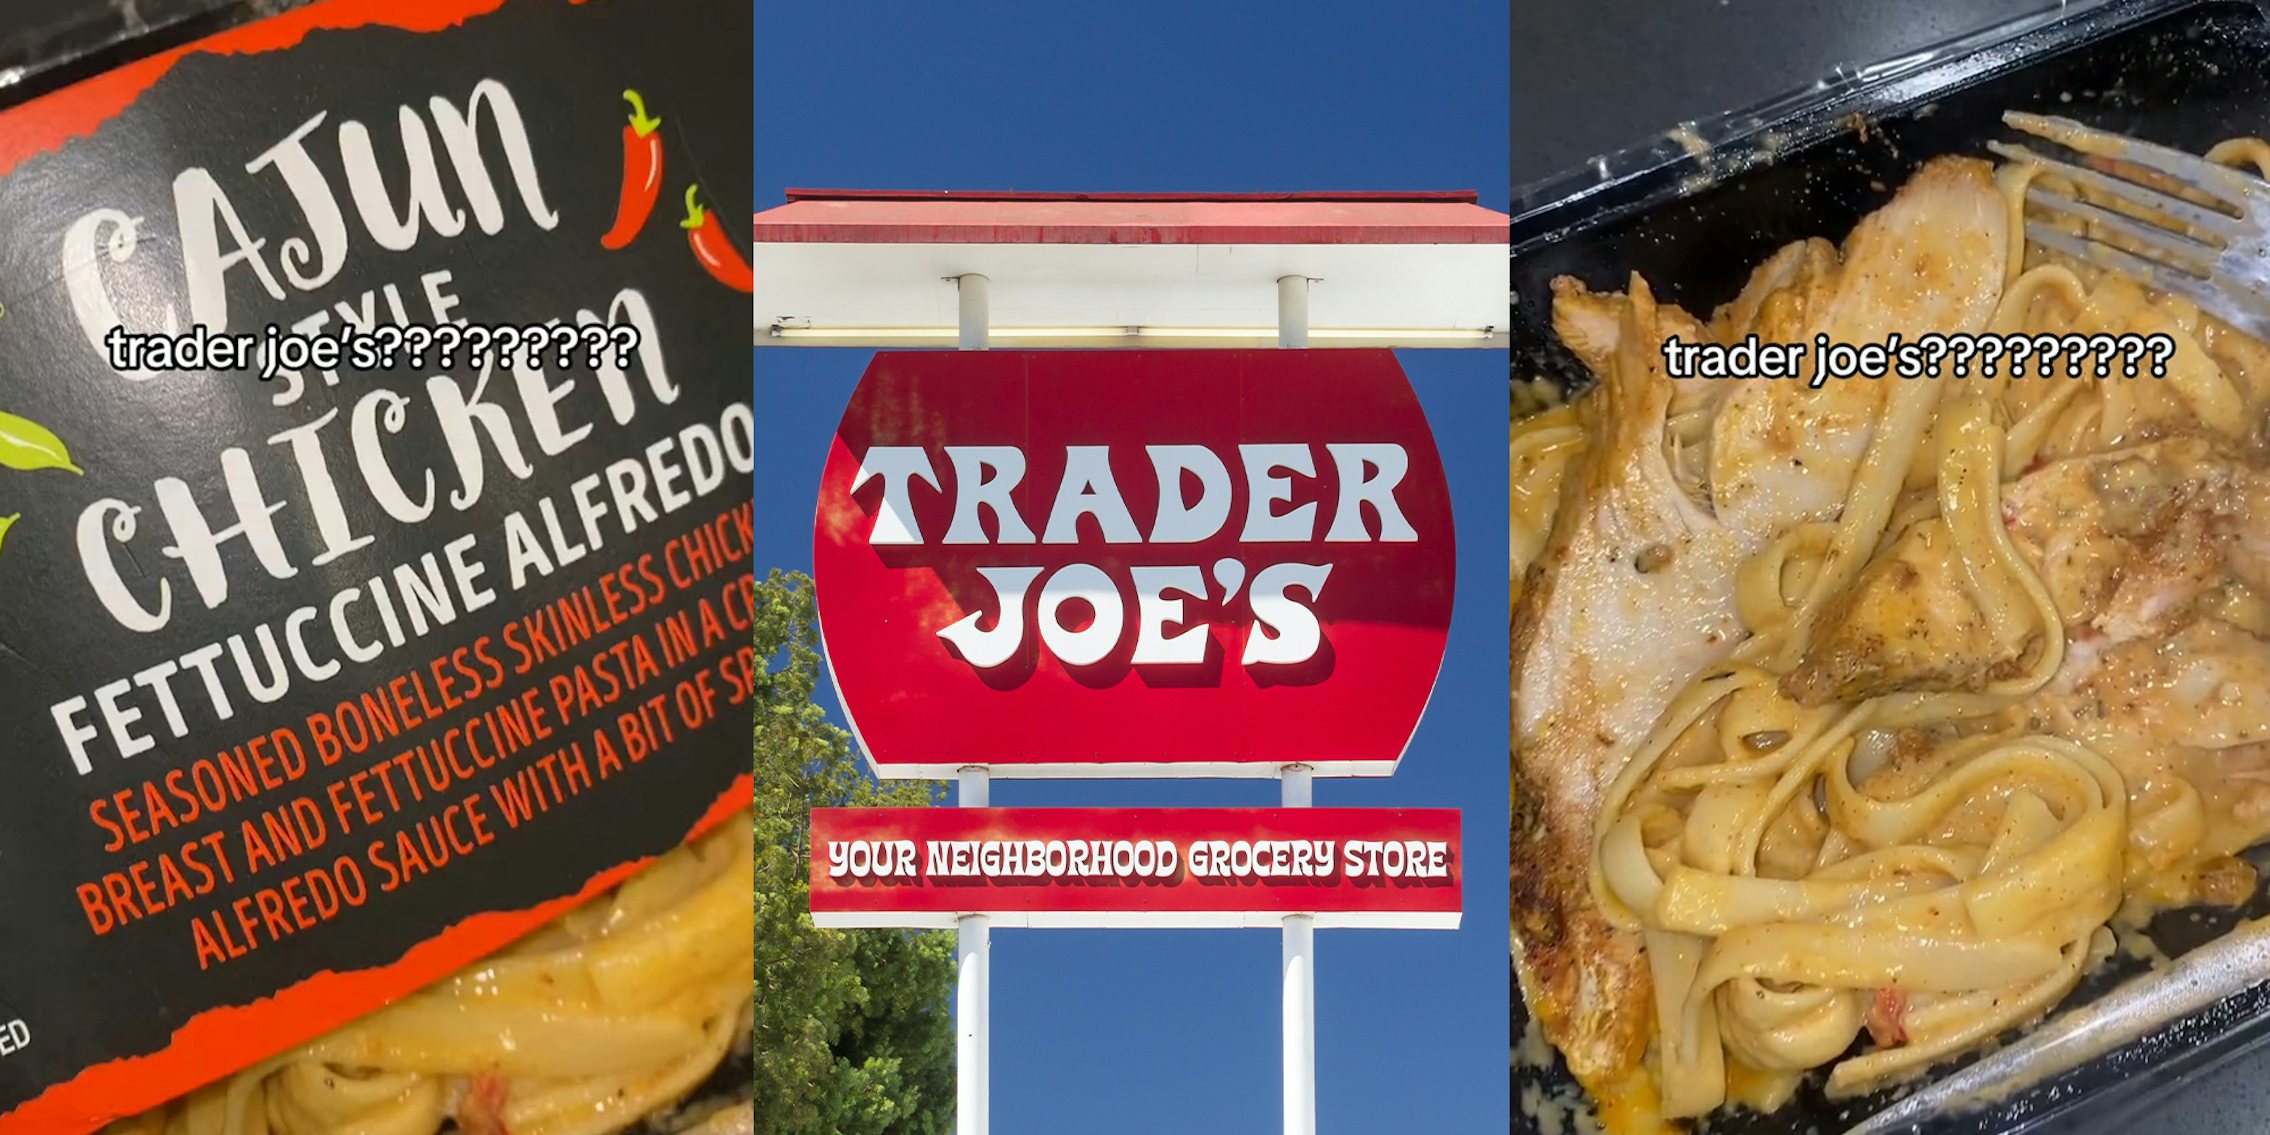 Black customer praises Cajun chicken fettuccine alfredo, can’t believe it’s from upscale grocer Trader Joe’s